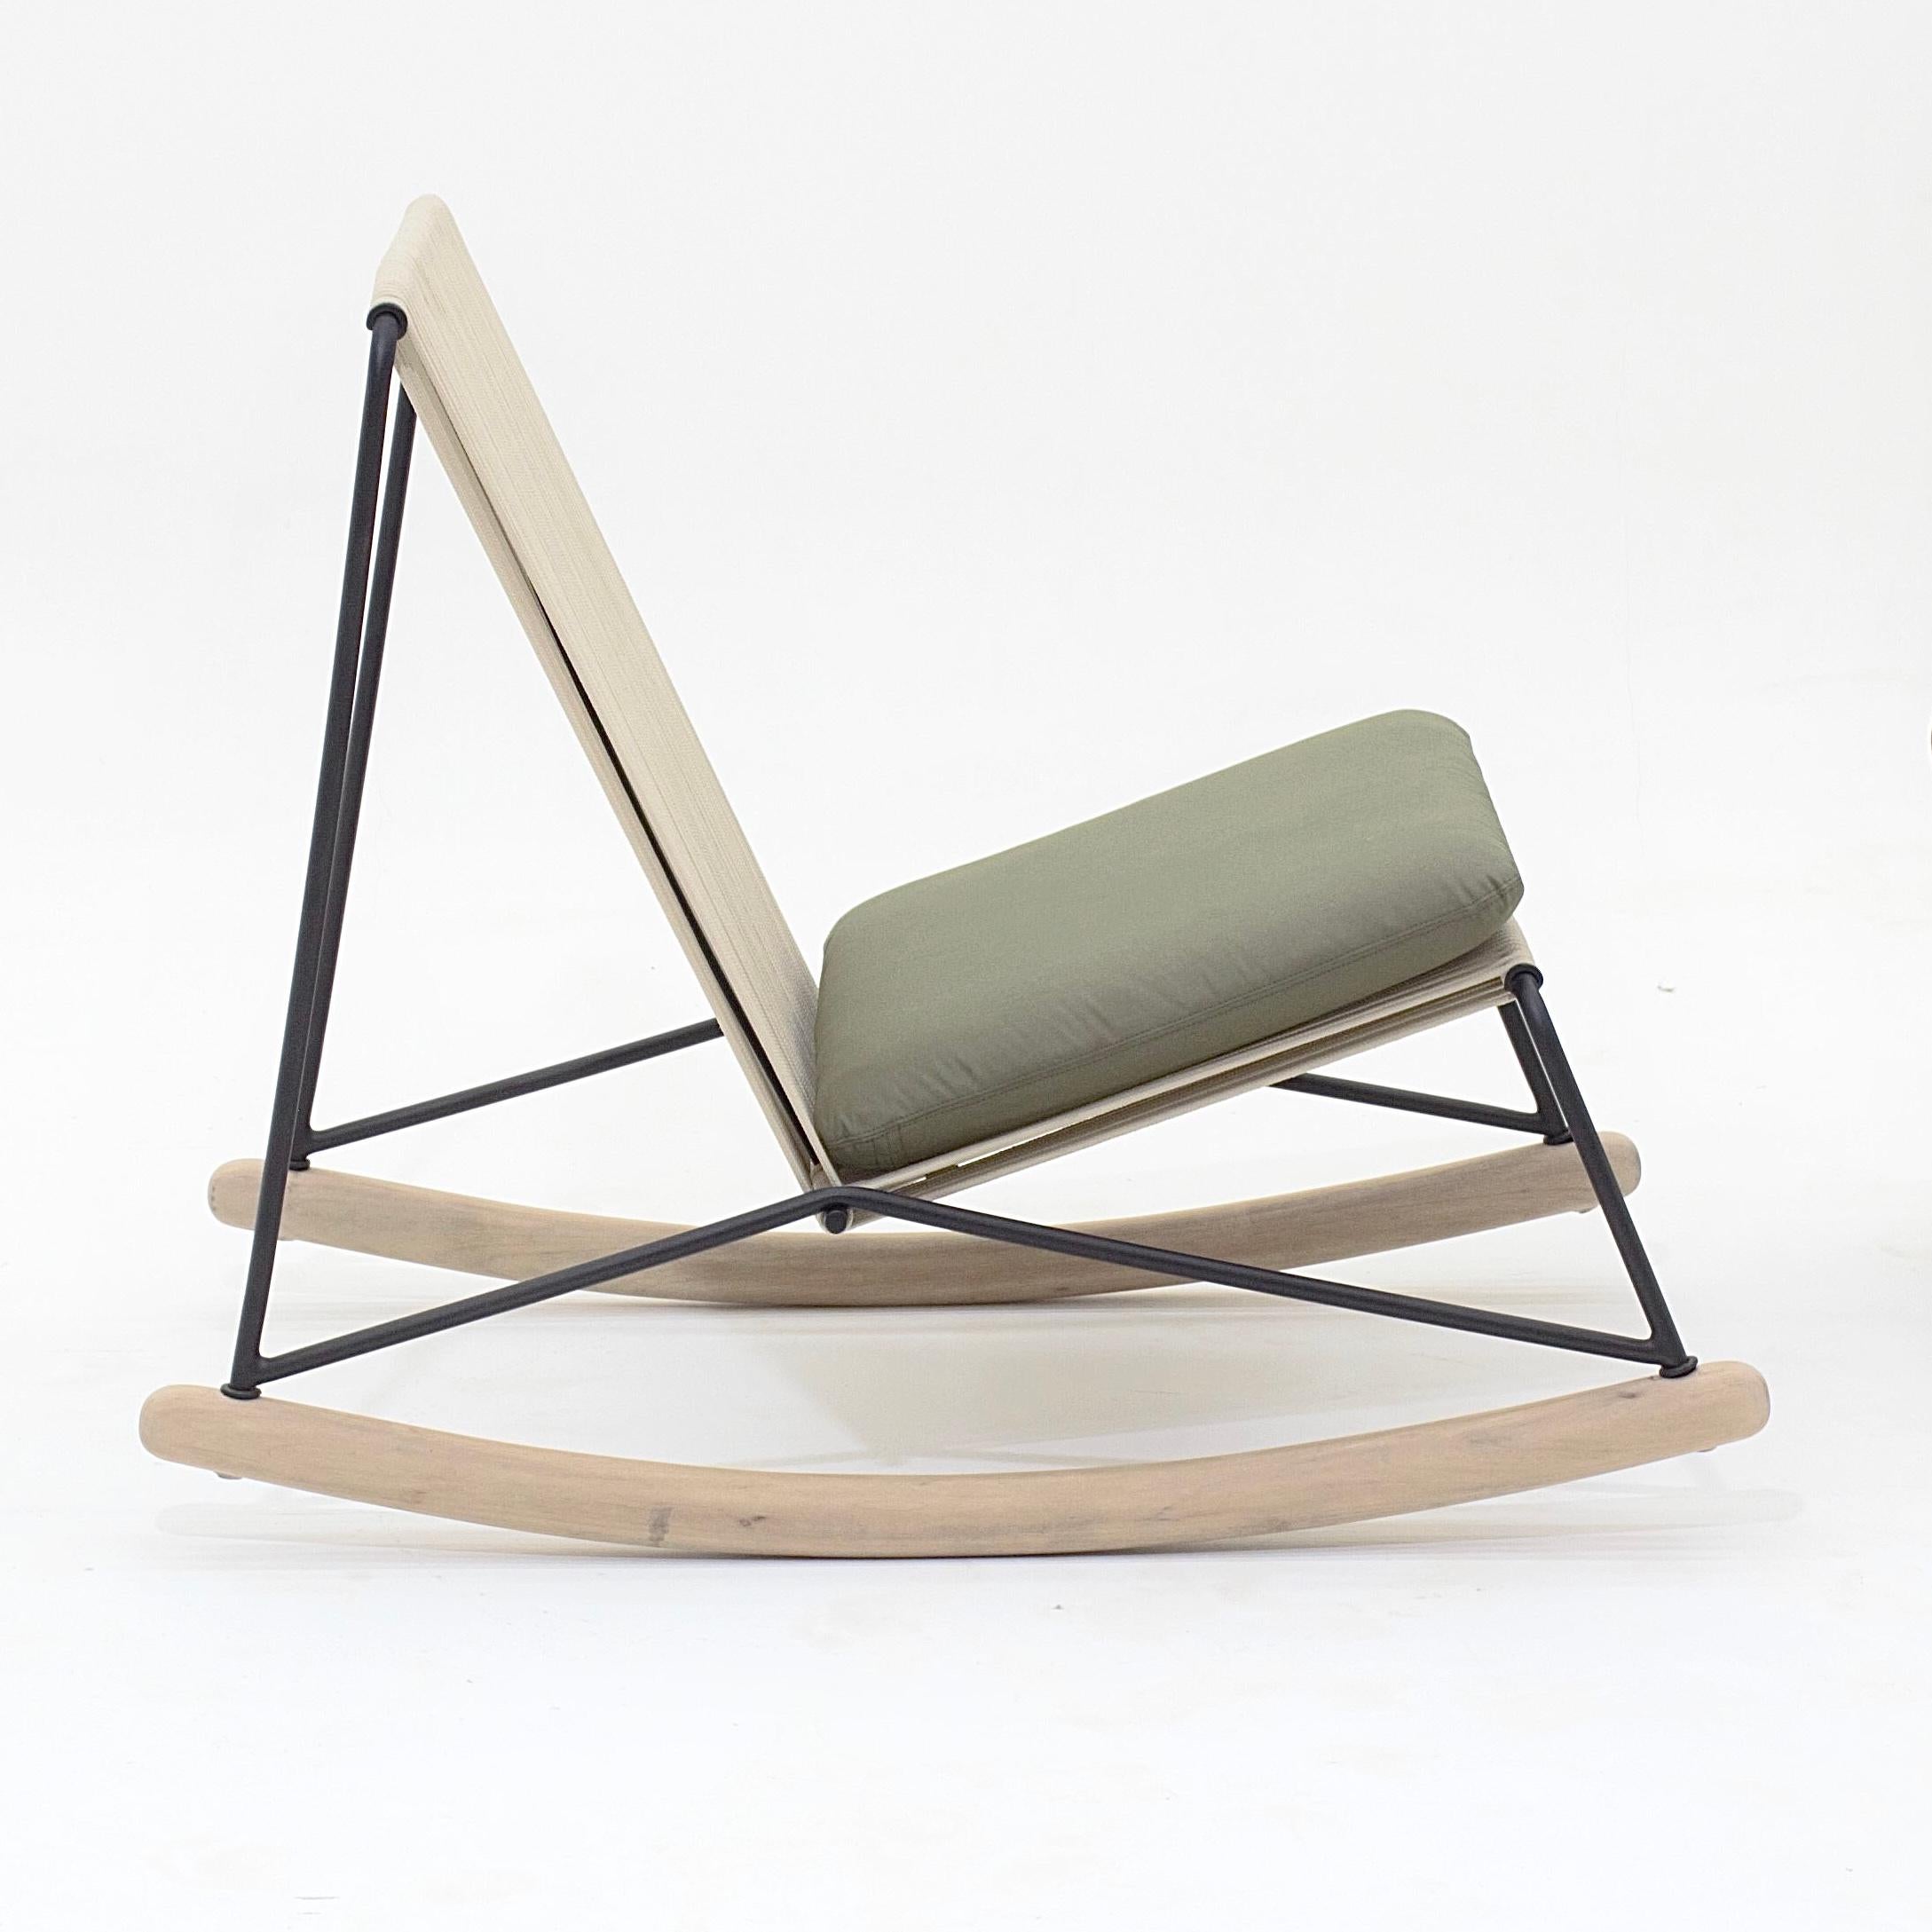 Ce fauteuil à bascule minimaliste en acier inoxydable, corde nautique, bois et tapisserie est conçu dans un raisonnement architectonique et géométrique. Tous les éléments constituent son fonctionnement et sont dimensionnés pour assurer la stabilité